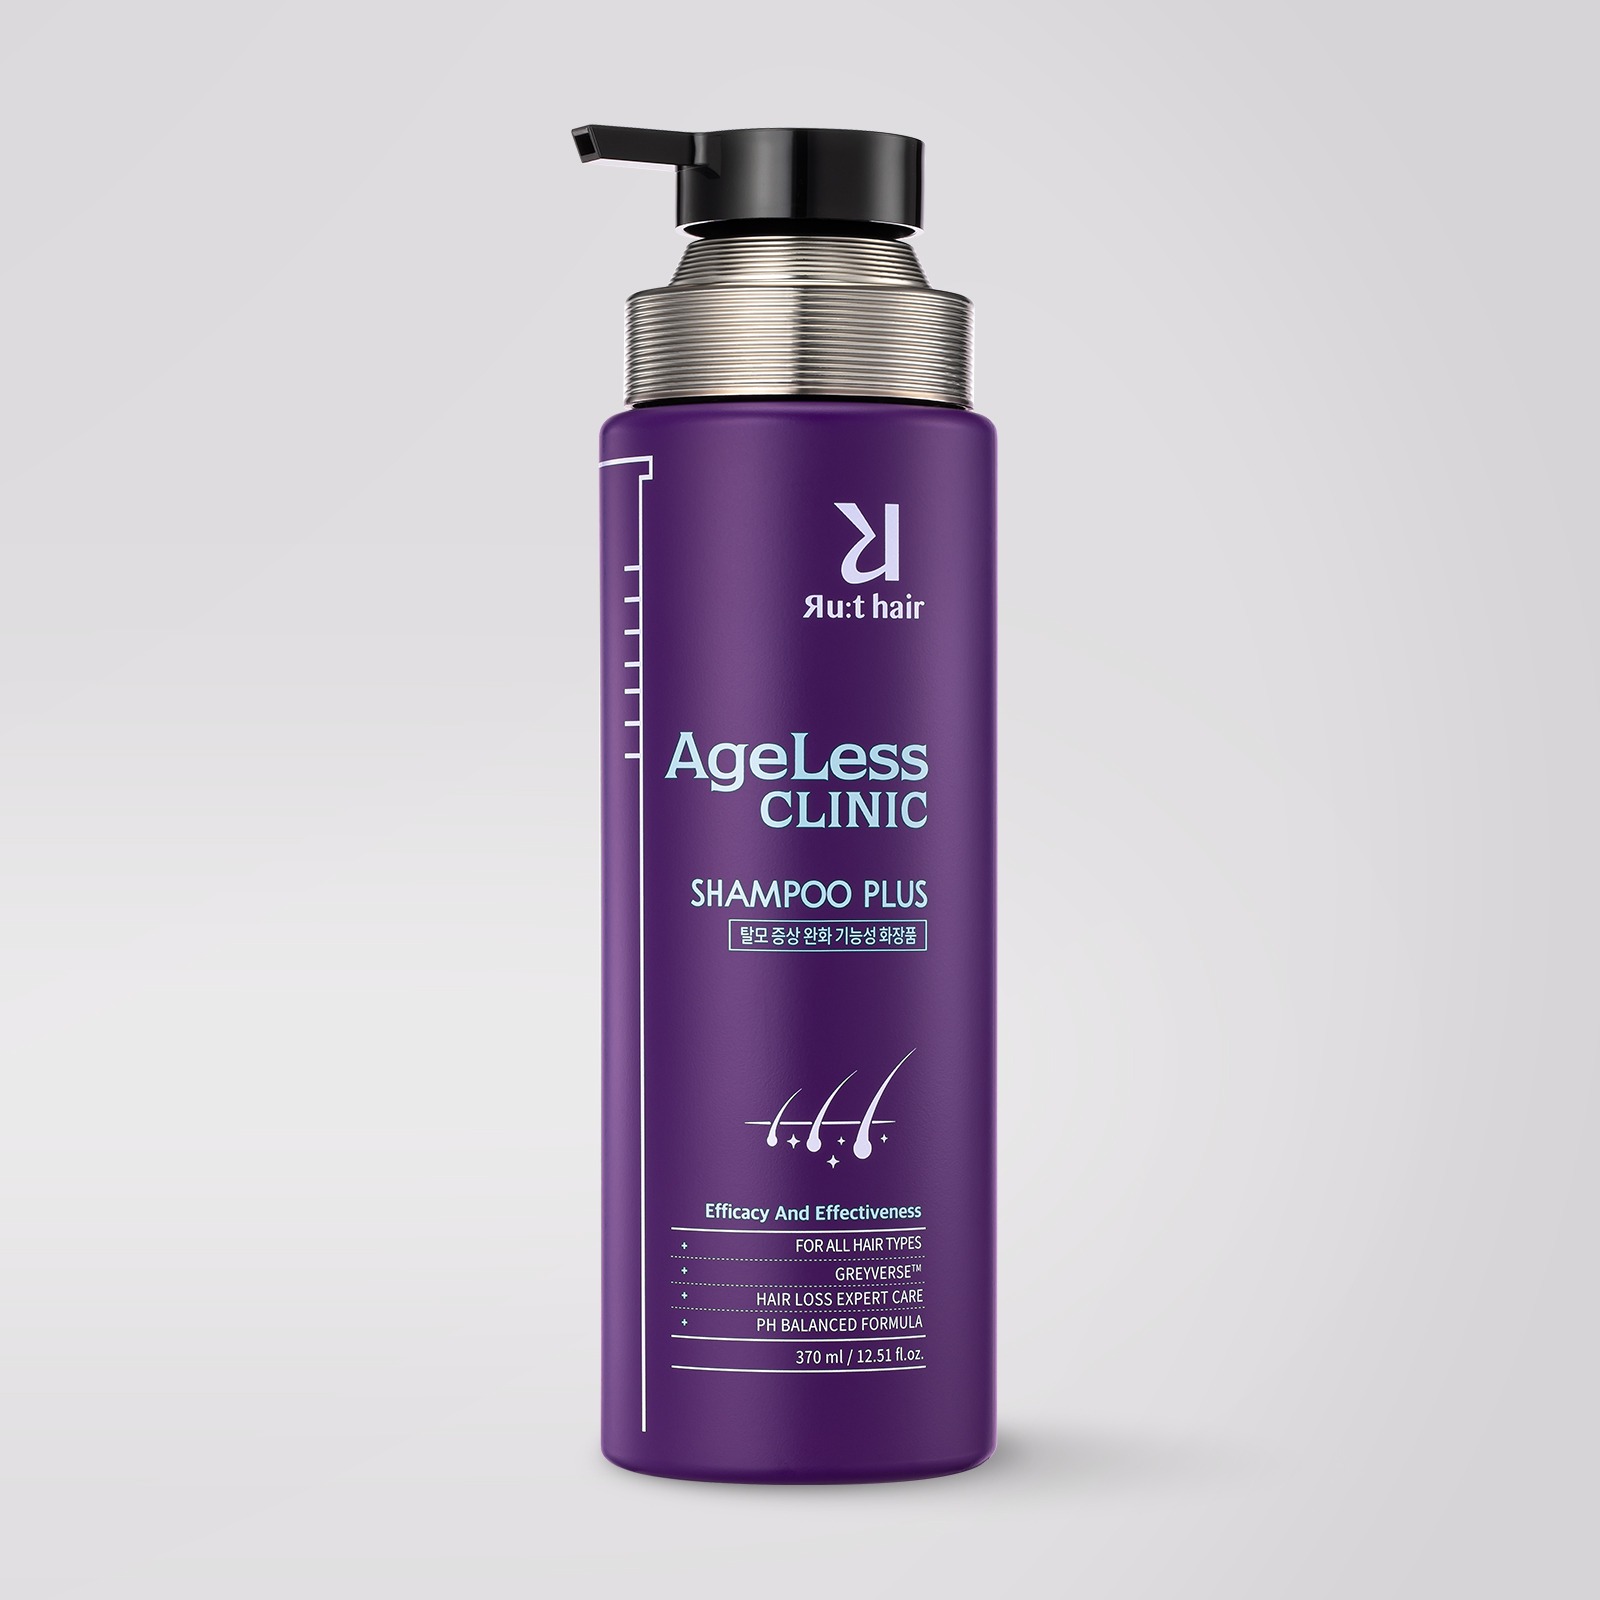 Rut hair Ageless Clinic Shampoo Plus 370 ml